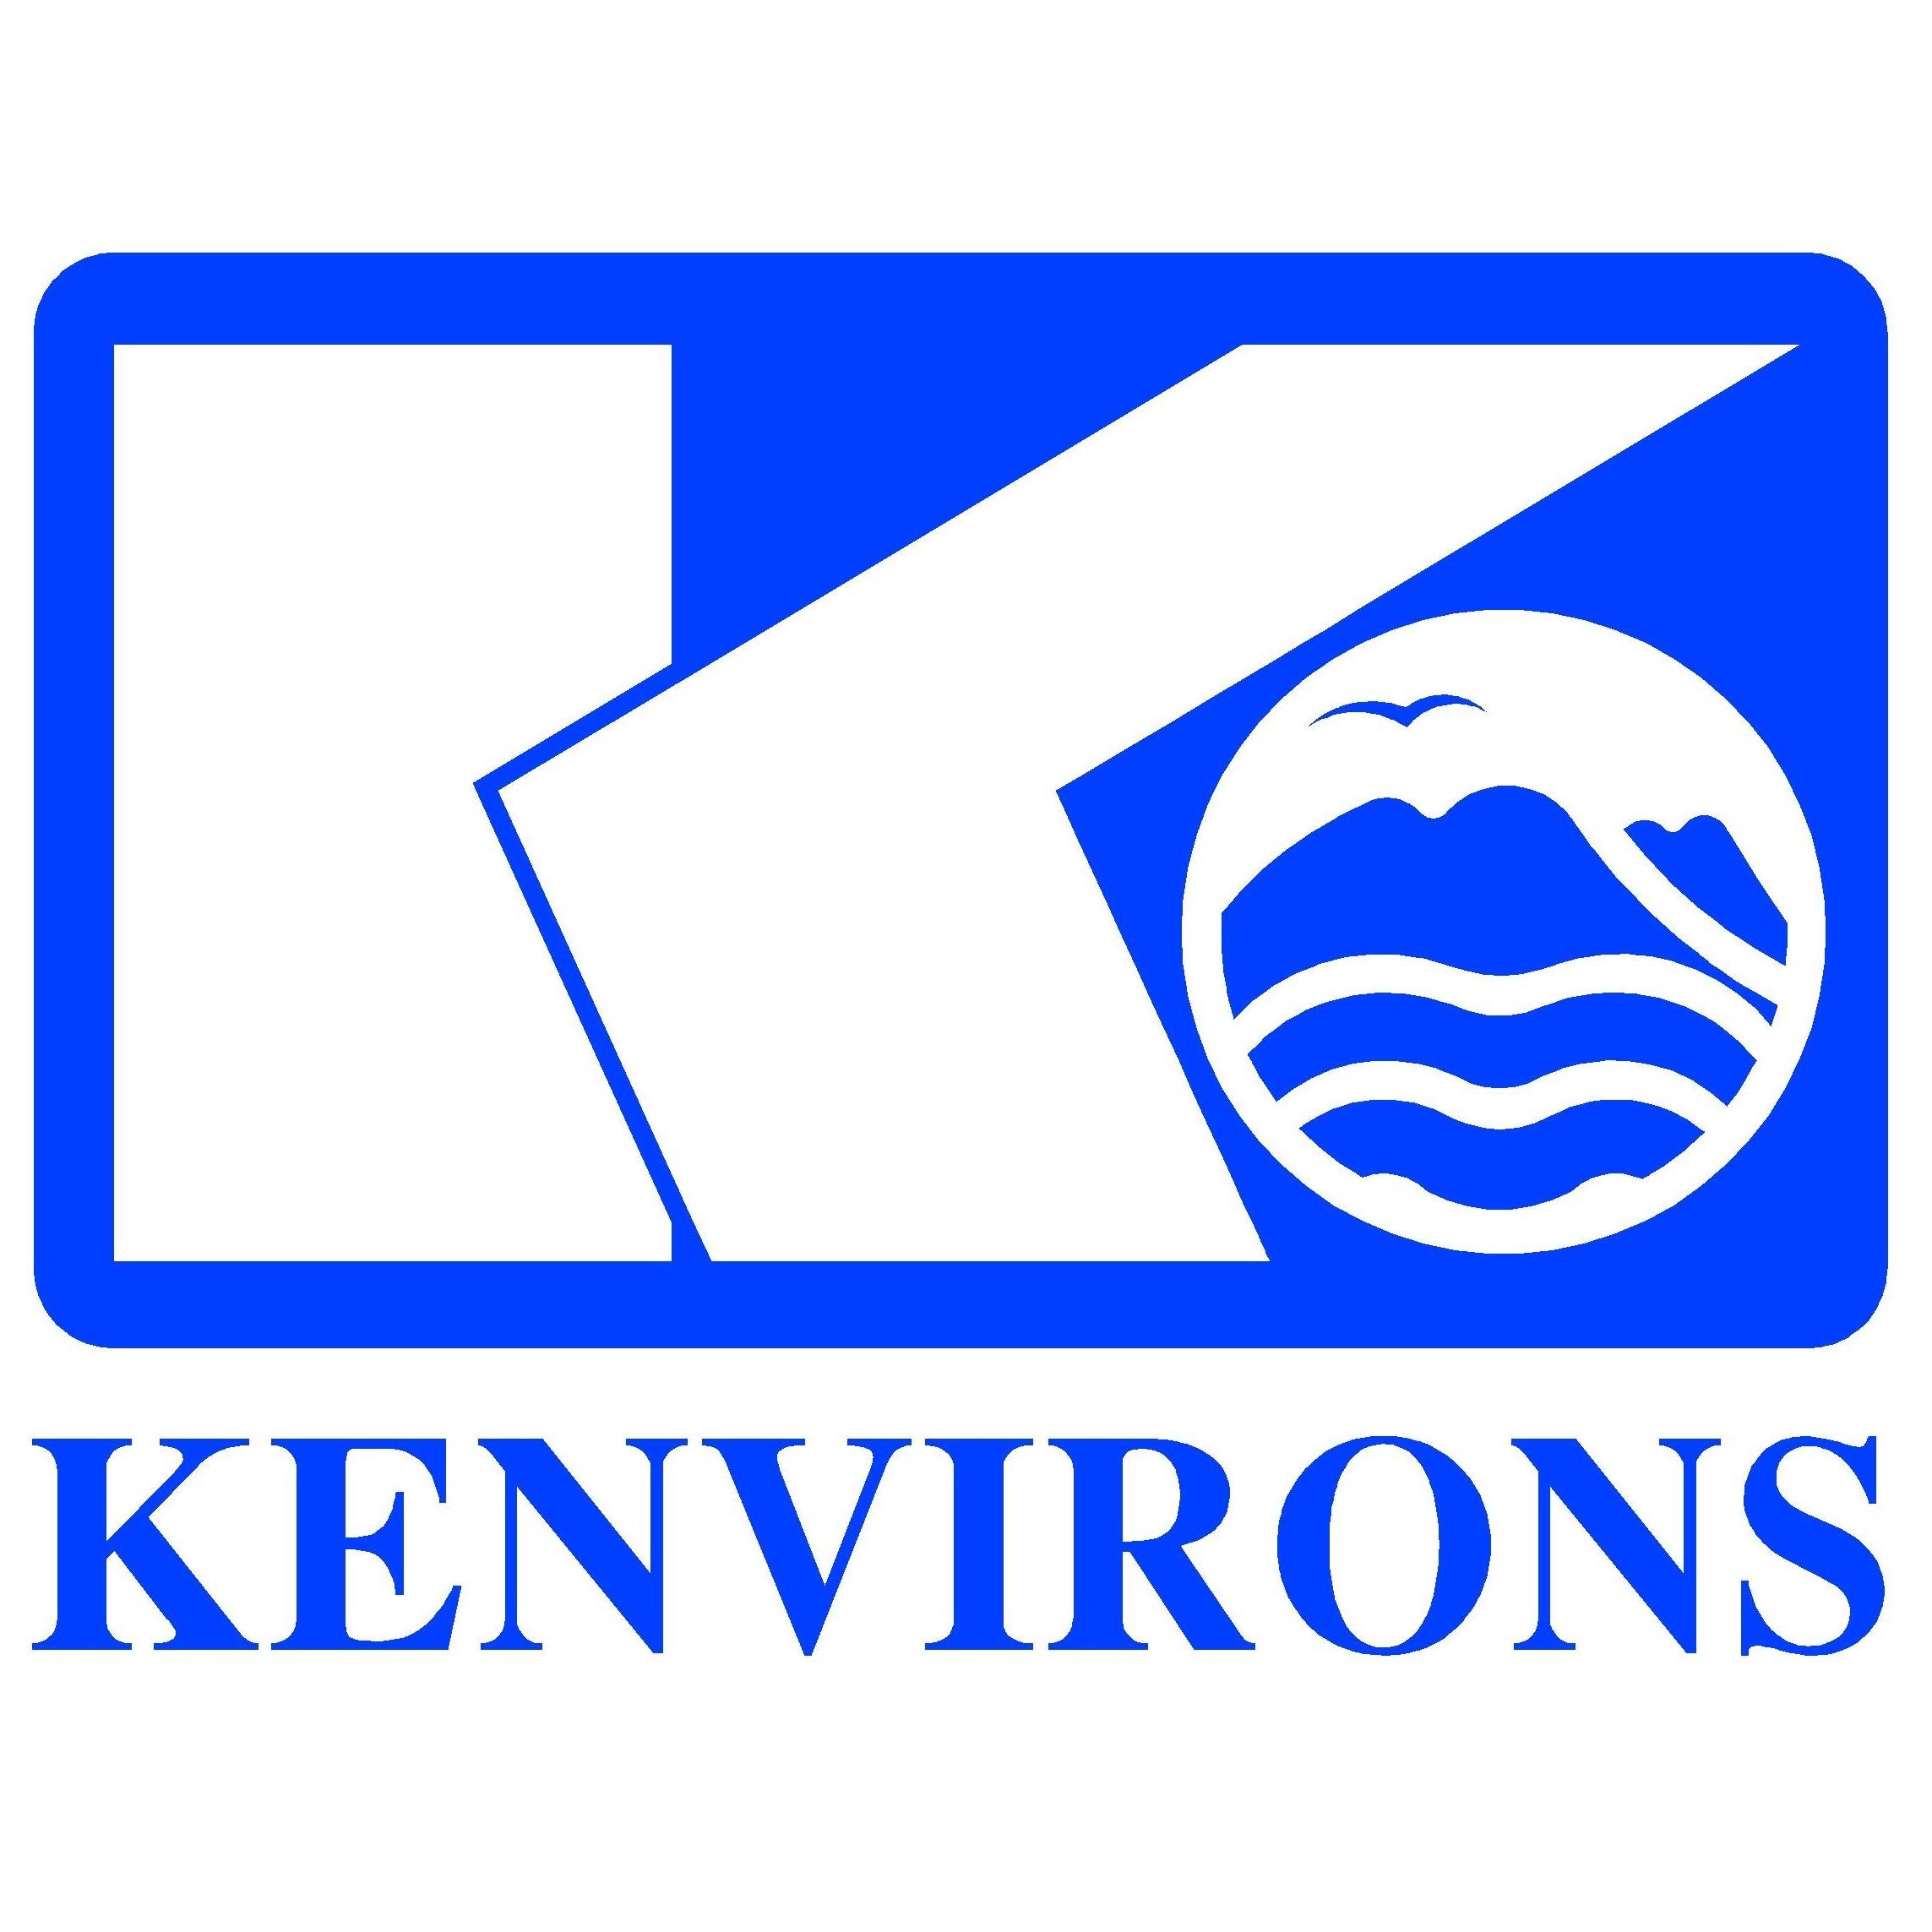 Kenvirons, Inc. Photo